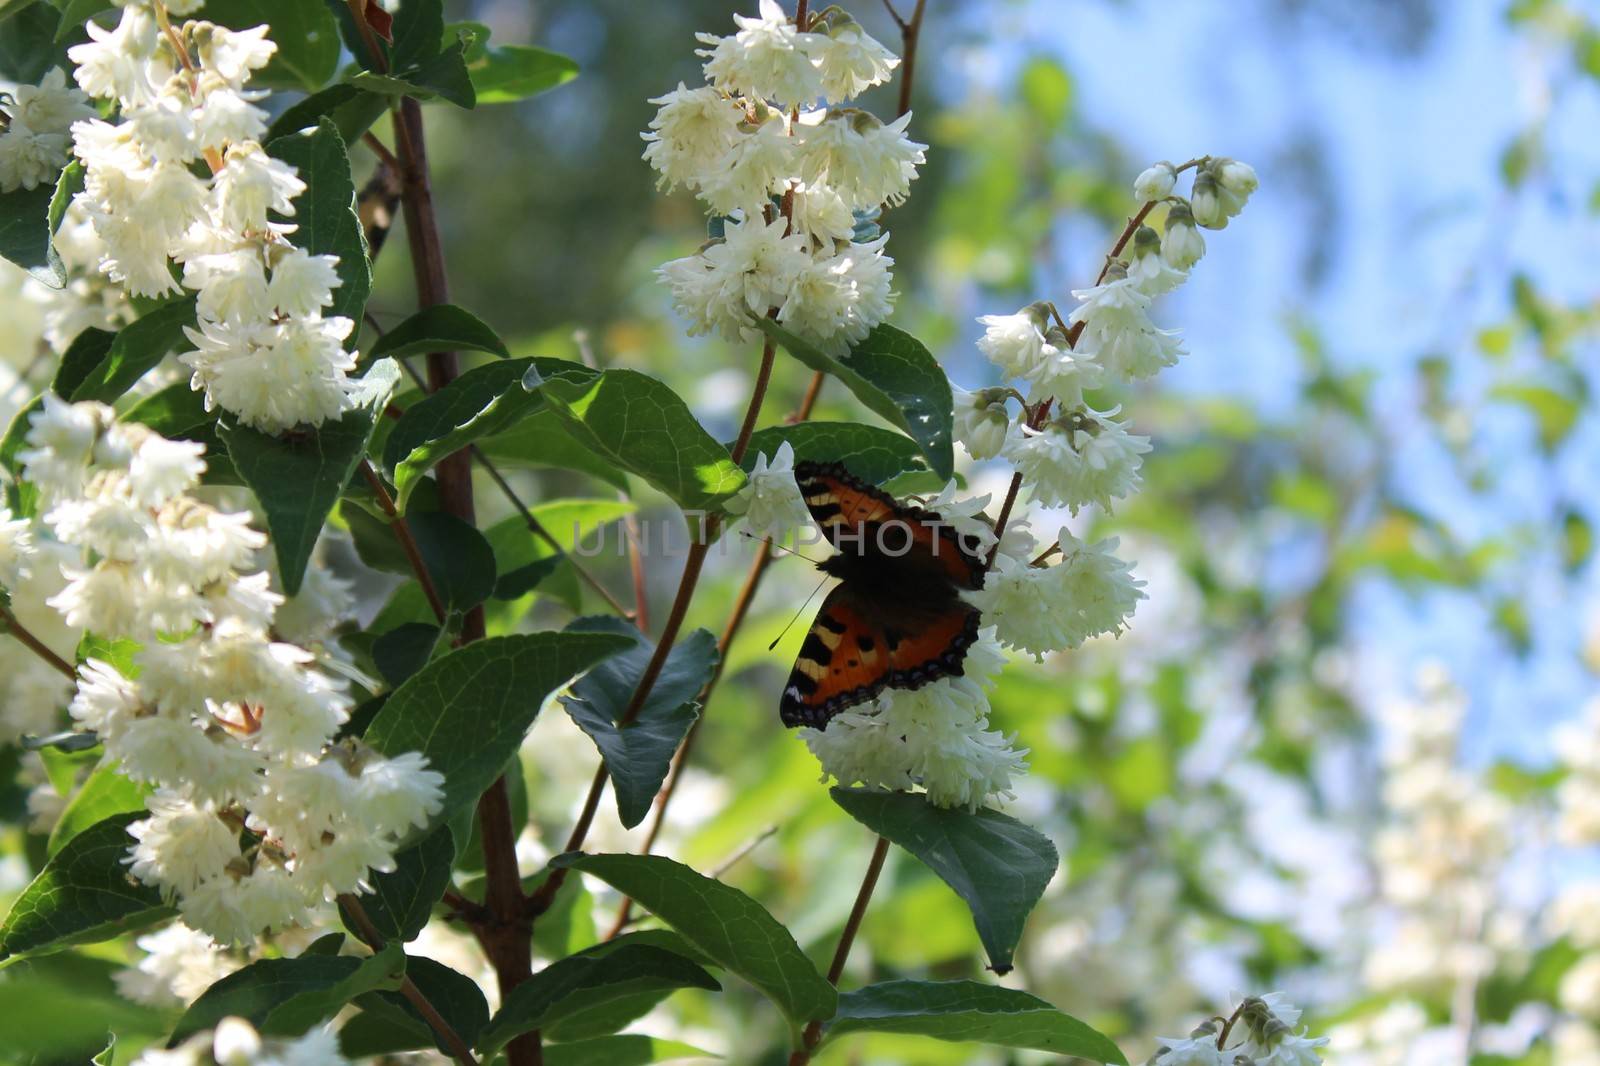 butterfly in the jasmine in the garden by martina_unbehauen